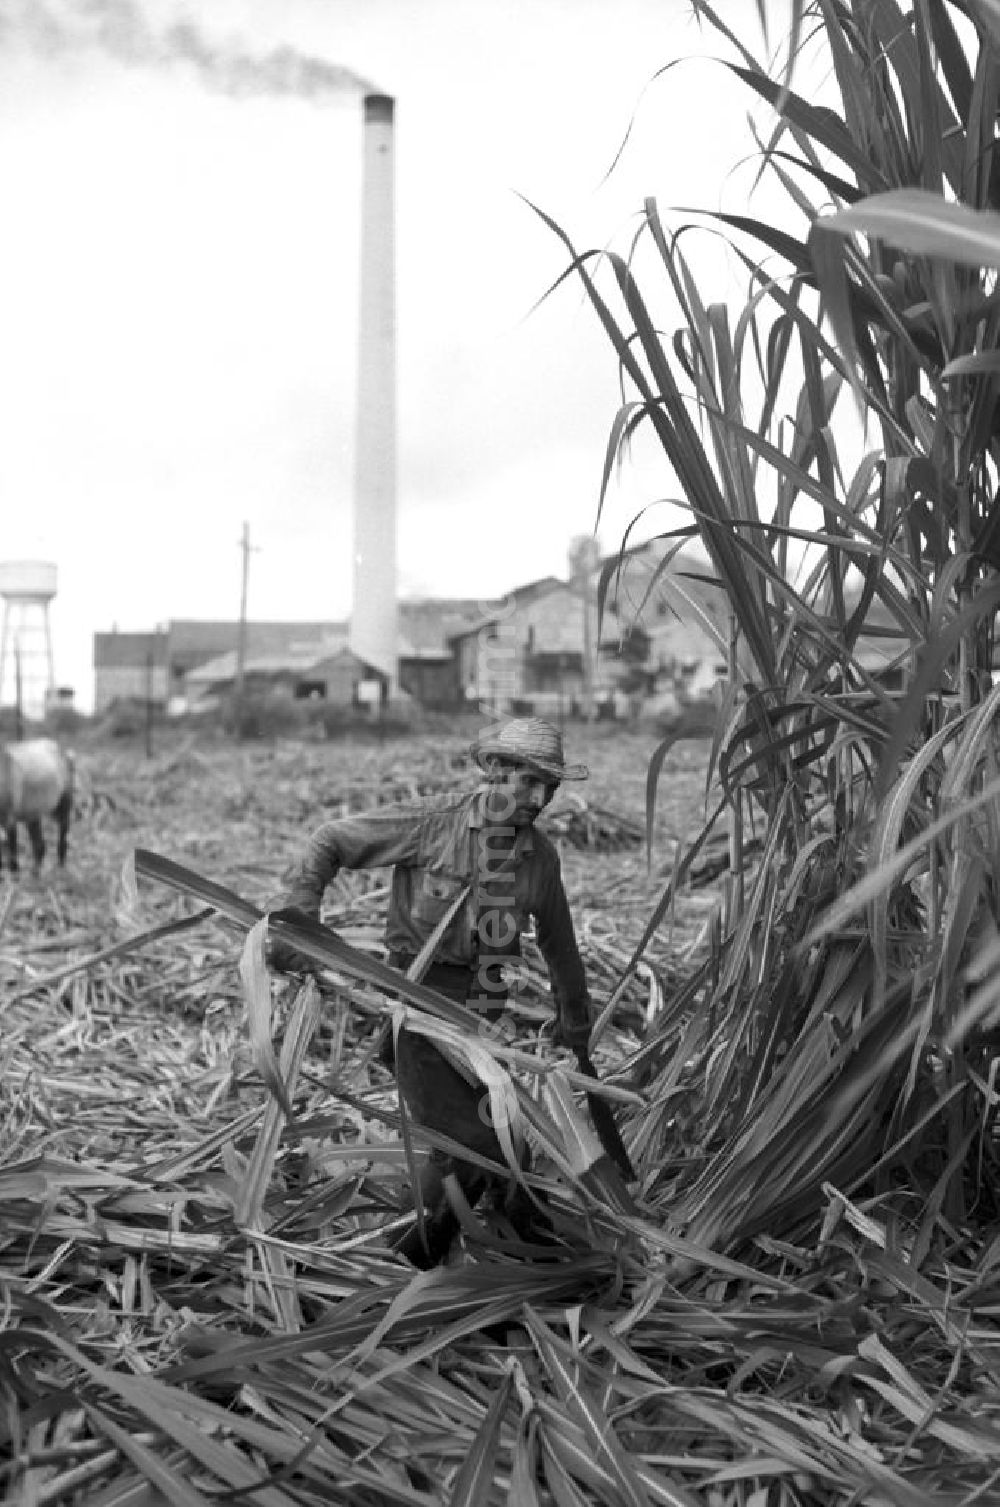 GDR photo archive: Camagüey - Die Zuckerrohrernte - die sogenannte Zafra - erfolgt in Kuba noch meist auf traditionelle Weise, hier ein Arbeiter bei der Ernte des Zuckerrohrs mit der Machete in der kubanischen Provinz Camagüey.